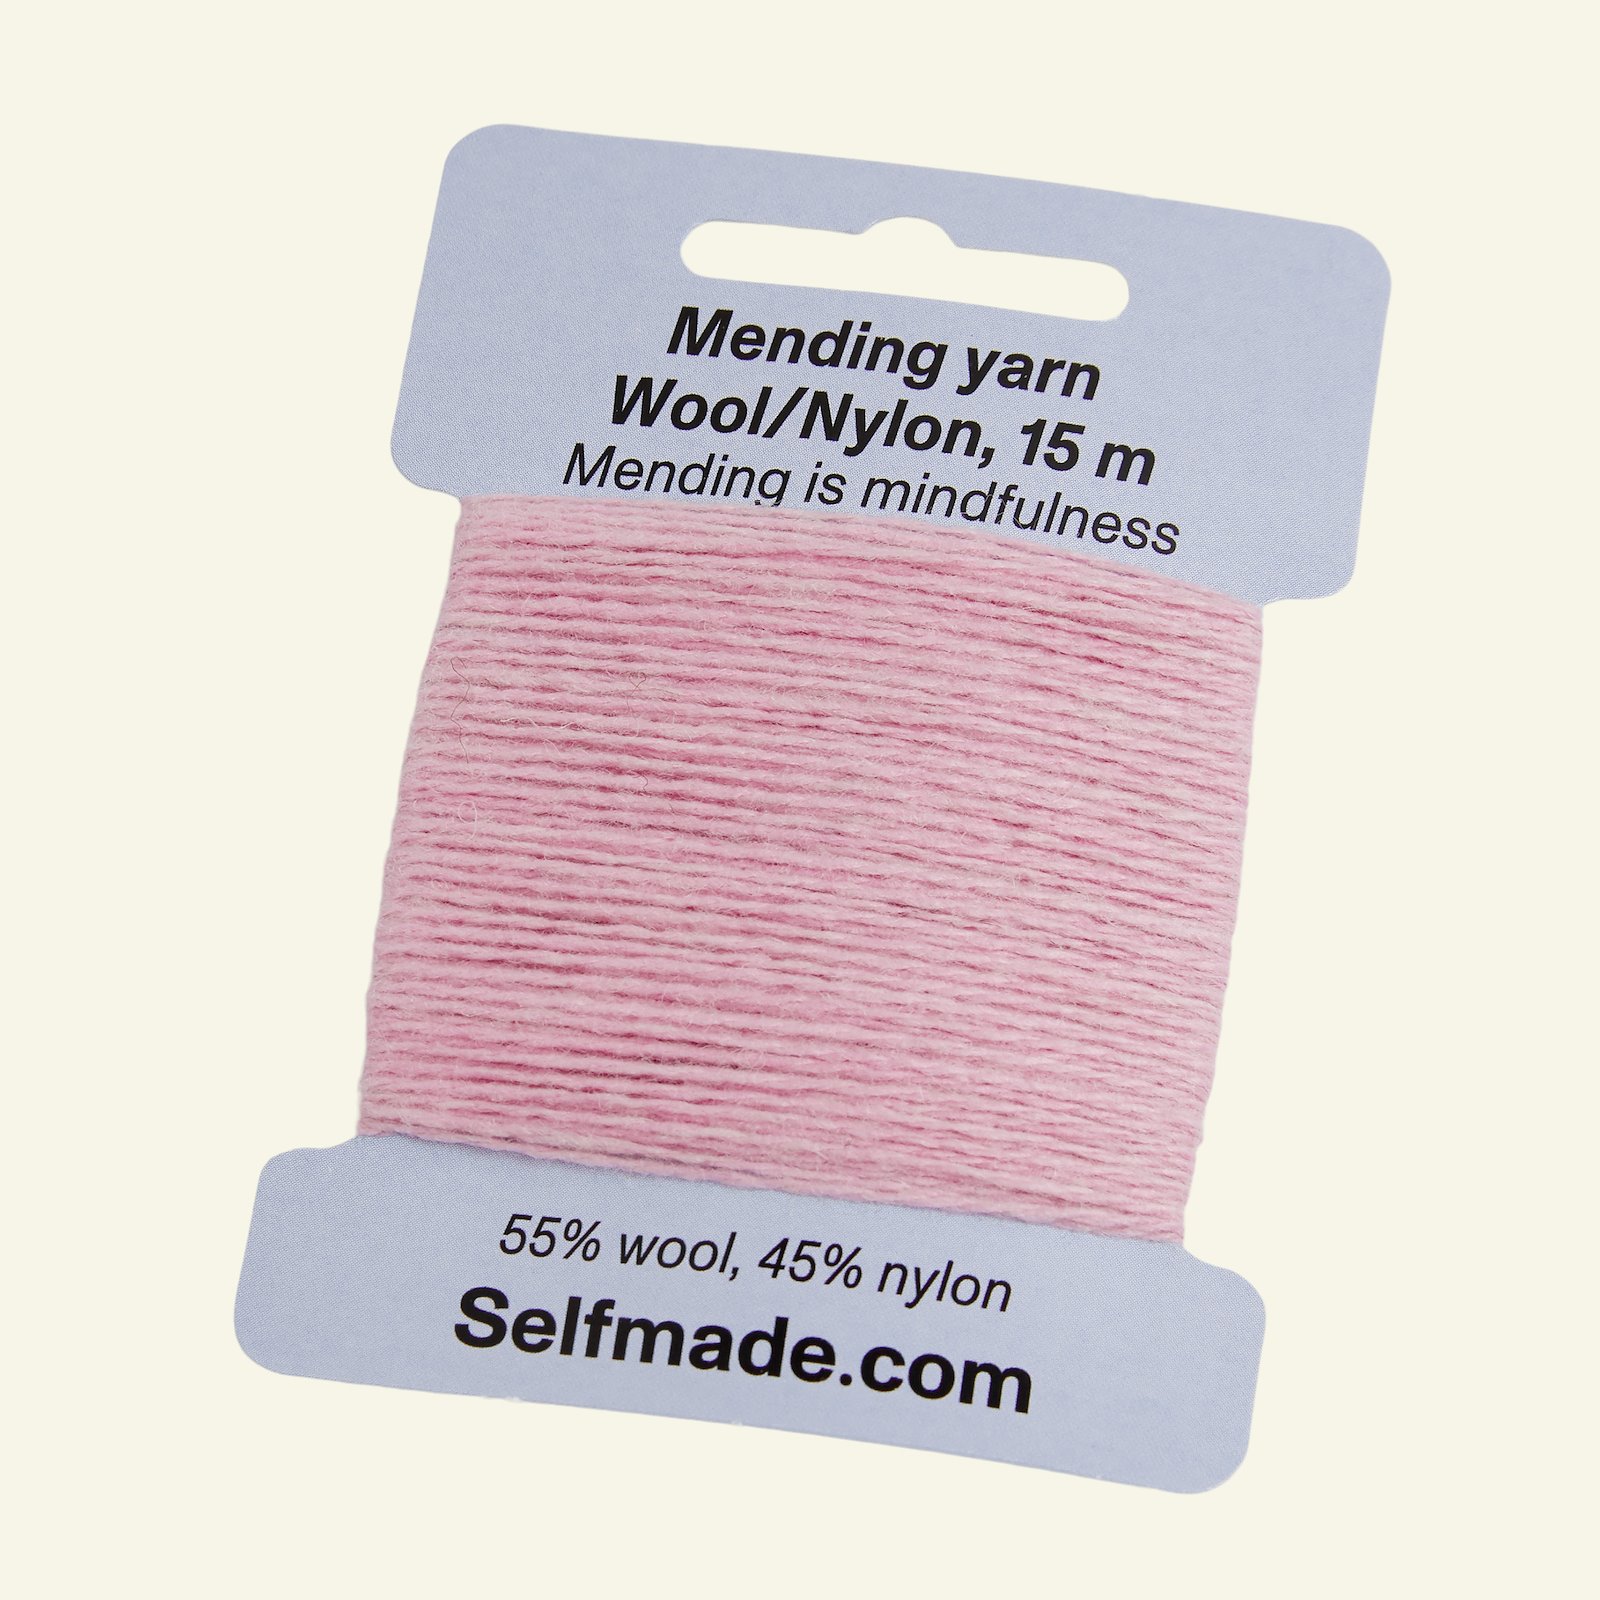 Mending yarn wool/nylon dark pink 15m 35503_pack